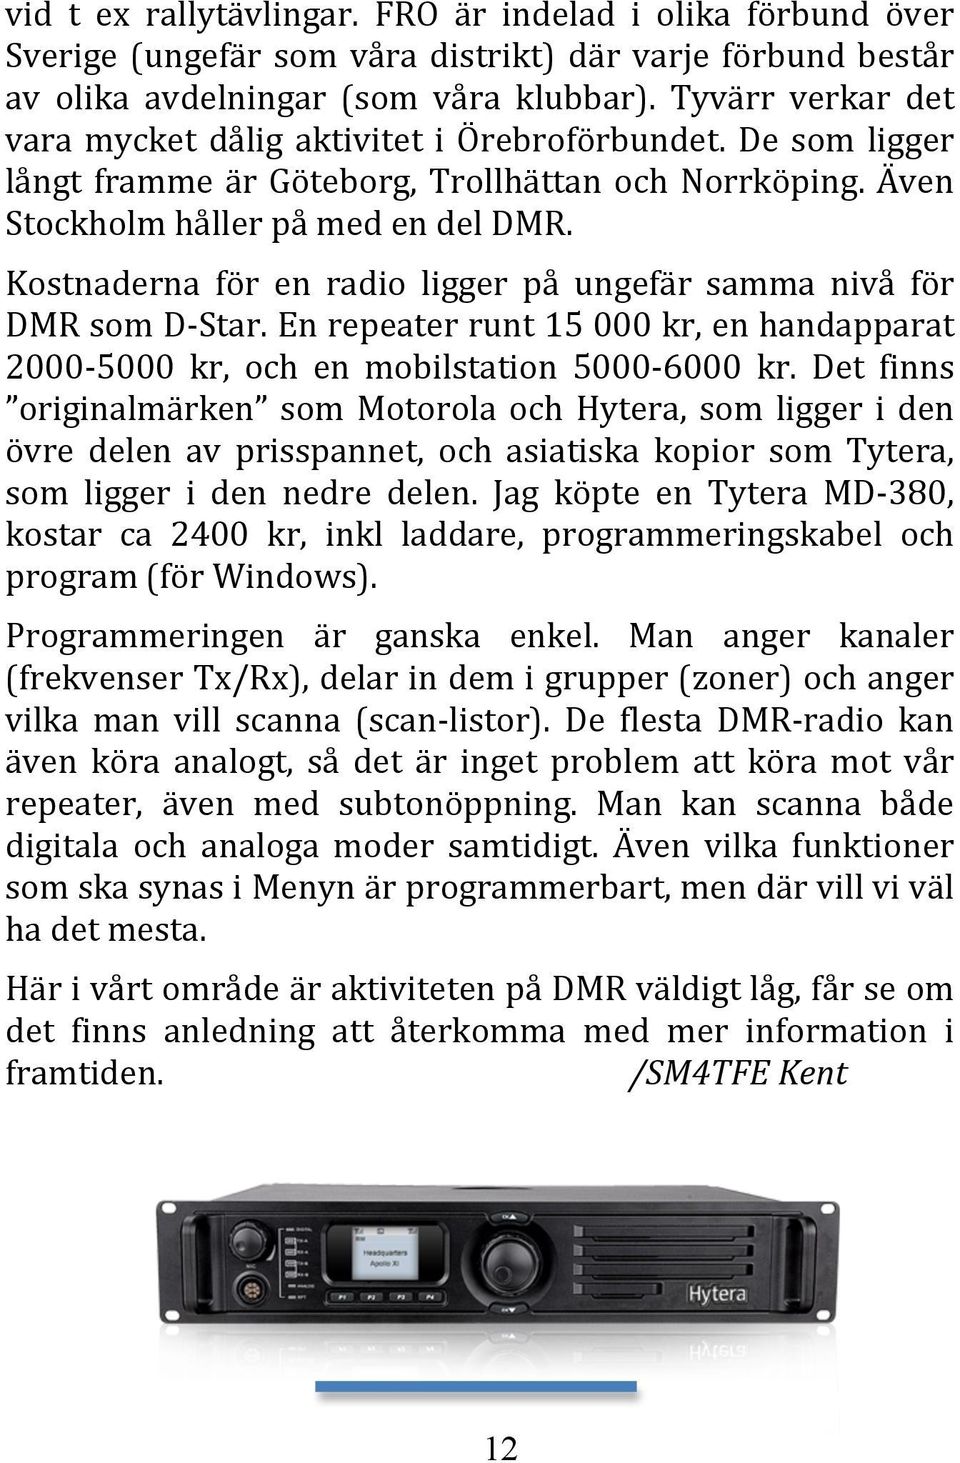 Kostnaderna för en radio ligger på ungefär samma nivå för DMR som D-Star. En repeater runt 15 000 kr, en handapparat 2000-5000 kr, och en mobilstation 5000-6000 kr.